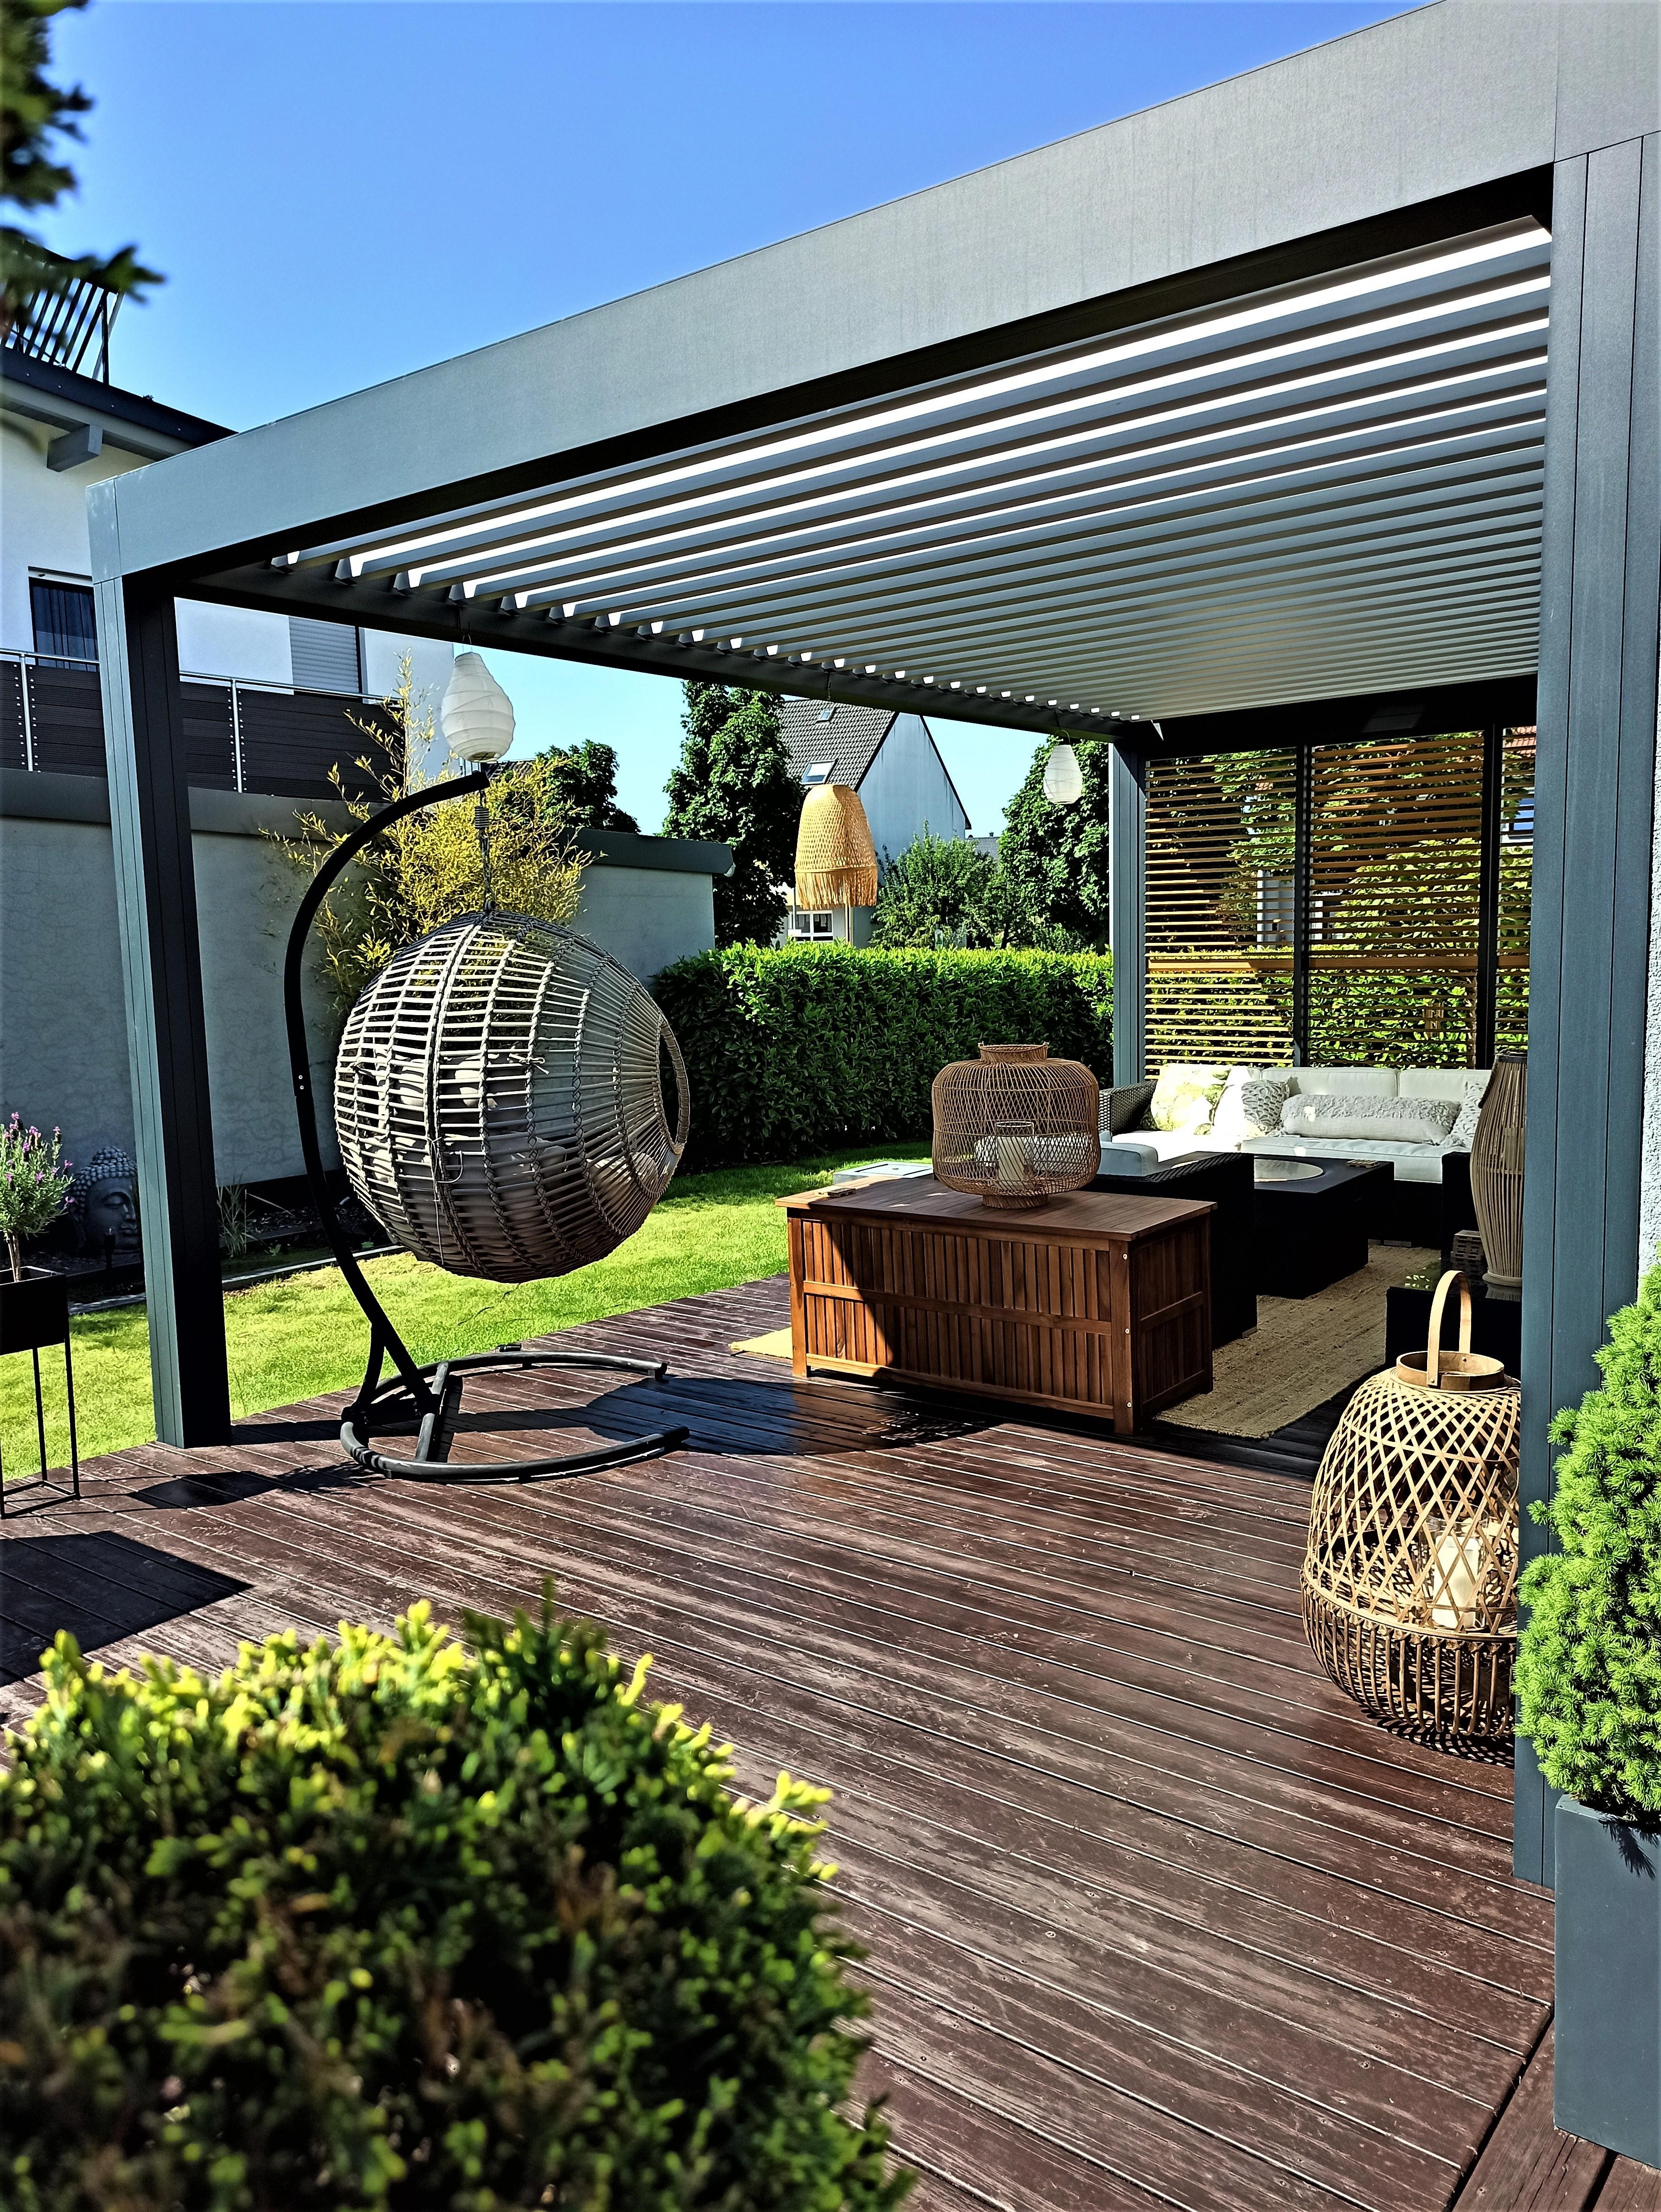 #Outdoor #Garten #Lounge #Terrasse #Pergola